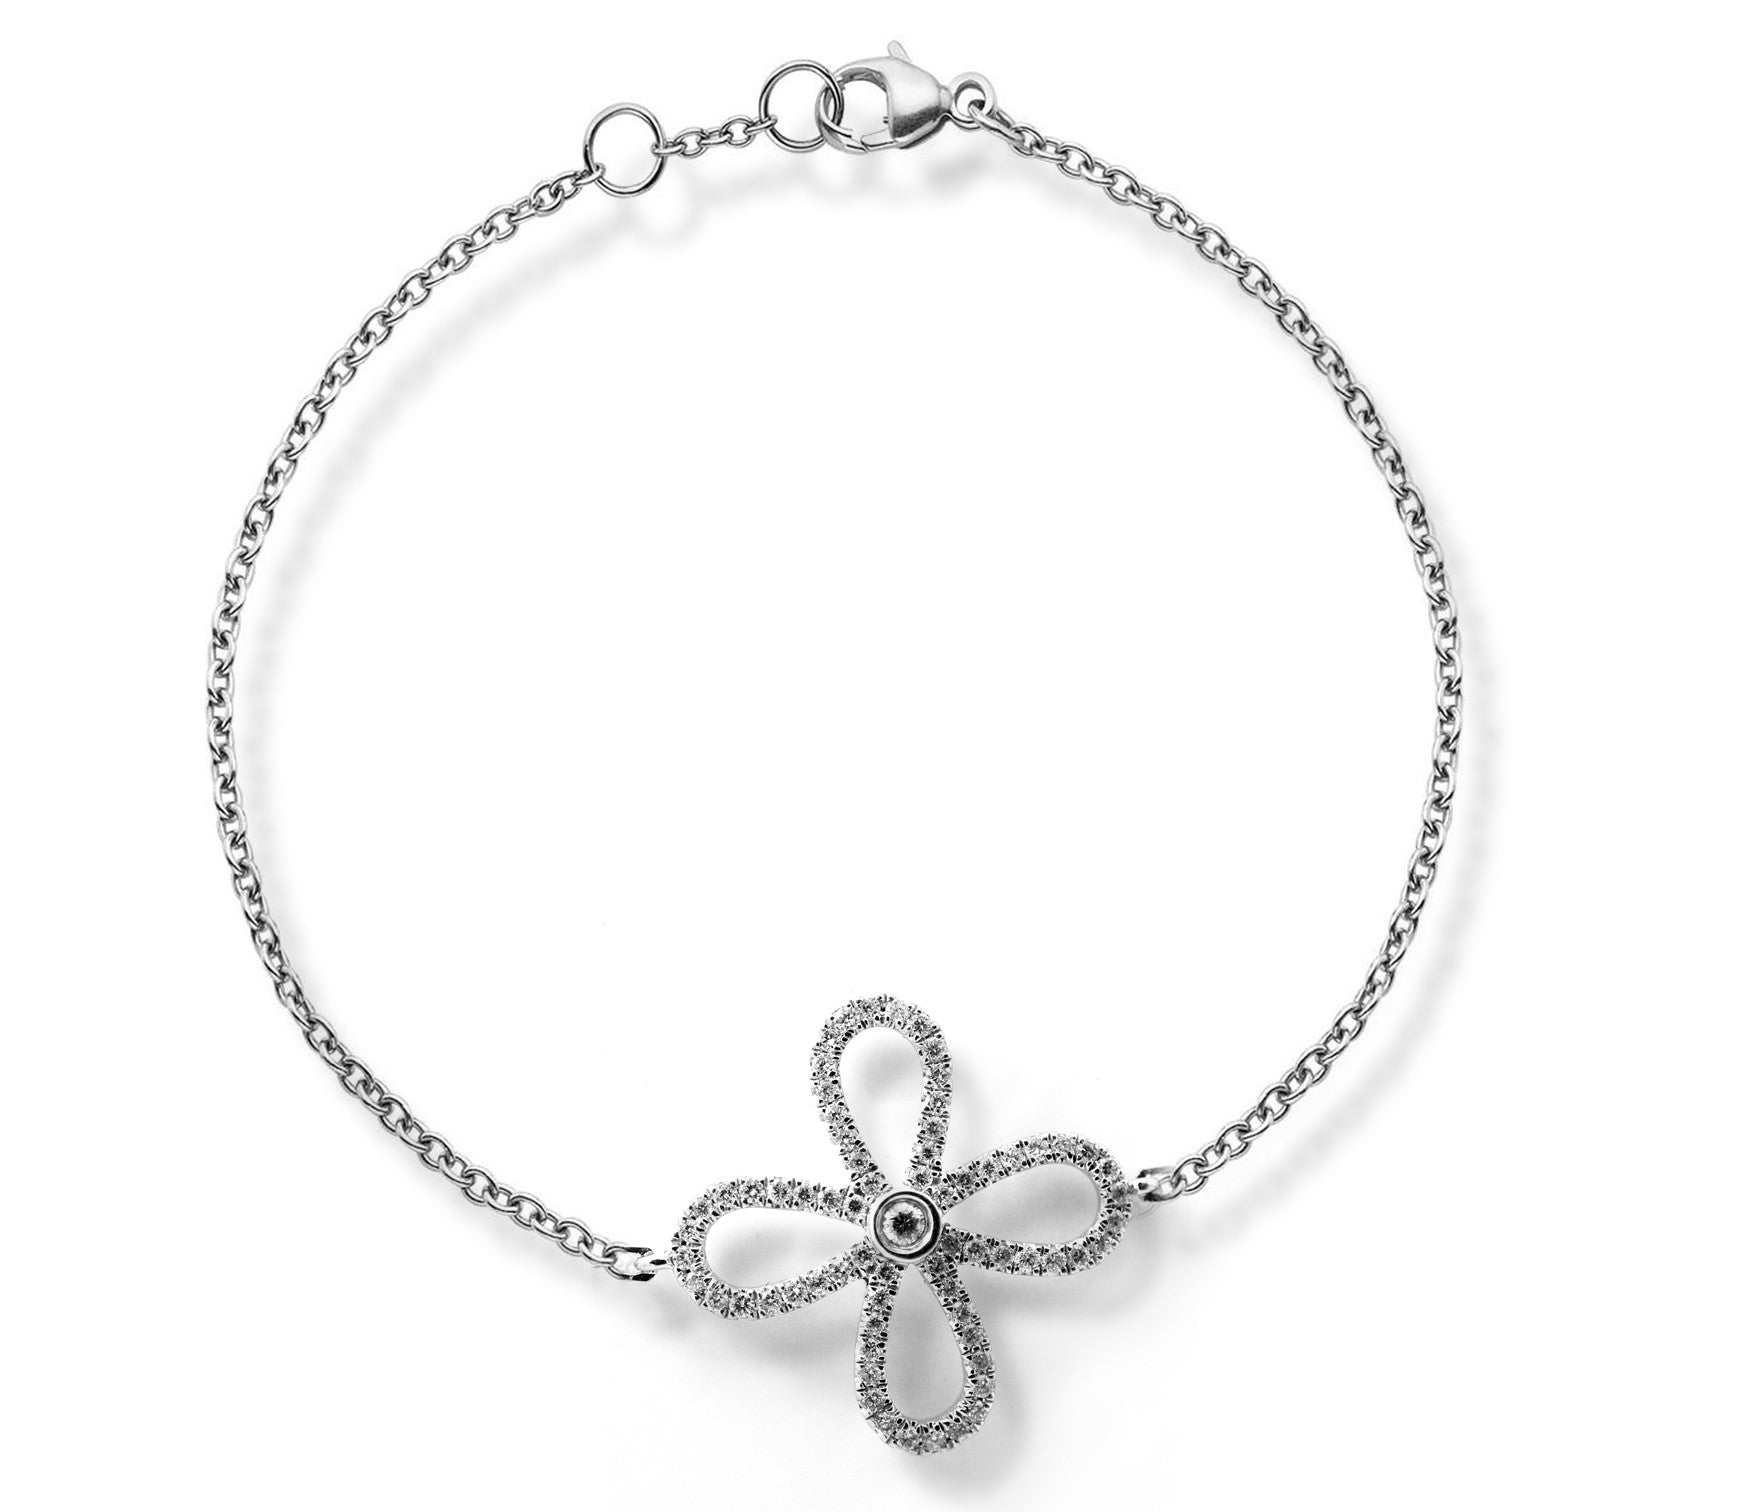 White Gold Diamond Flower Bracelet - ForeverJewels Design Studio 8